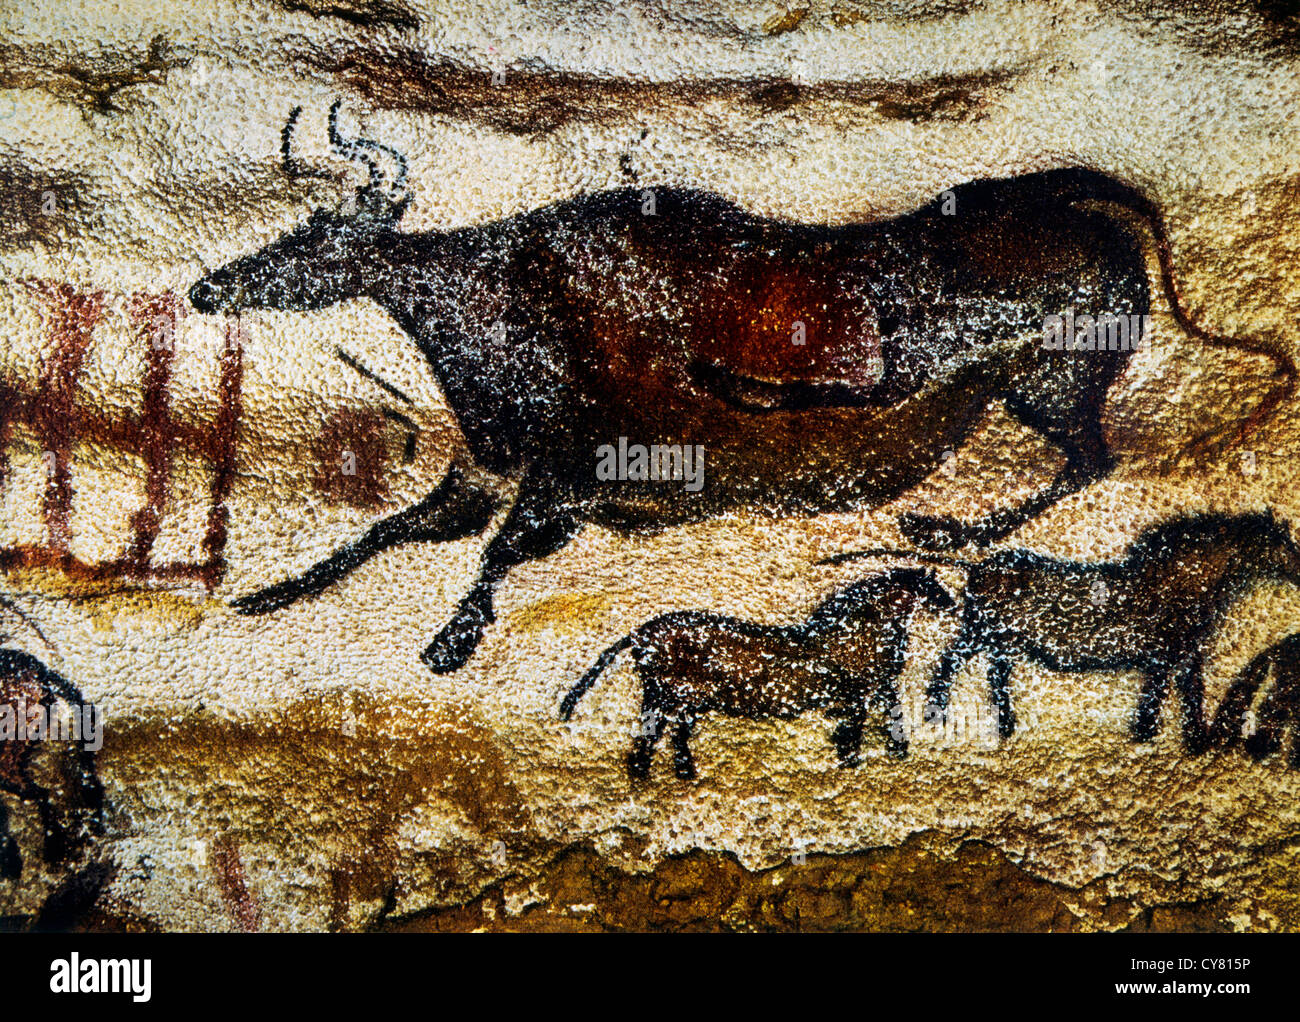 Pittura rupestre di mucca & Cavalli, Lascaux, Francia Foto Stock